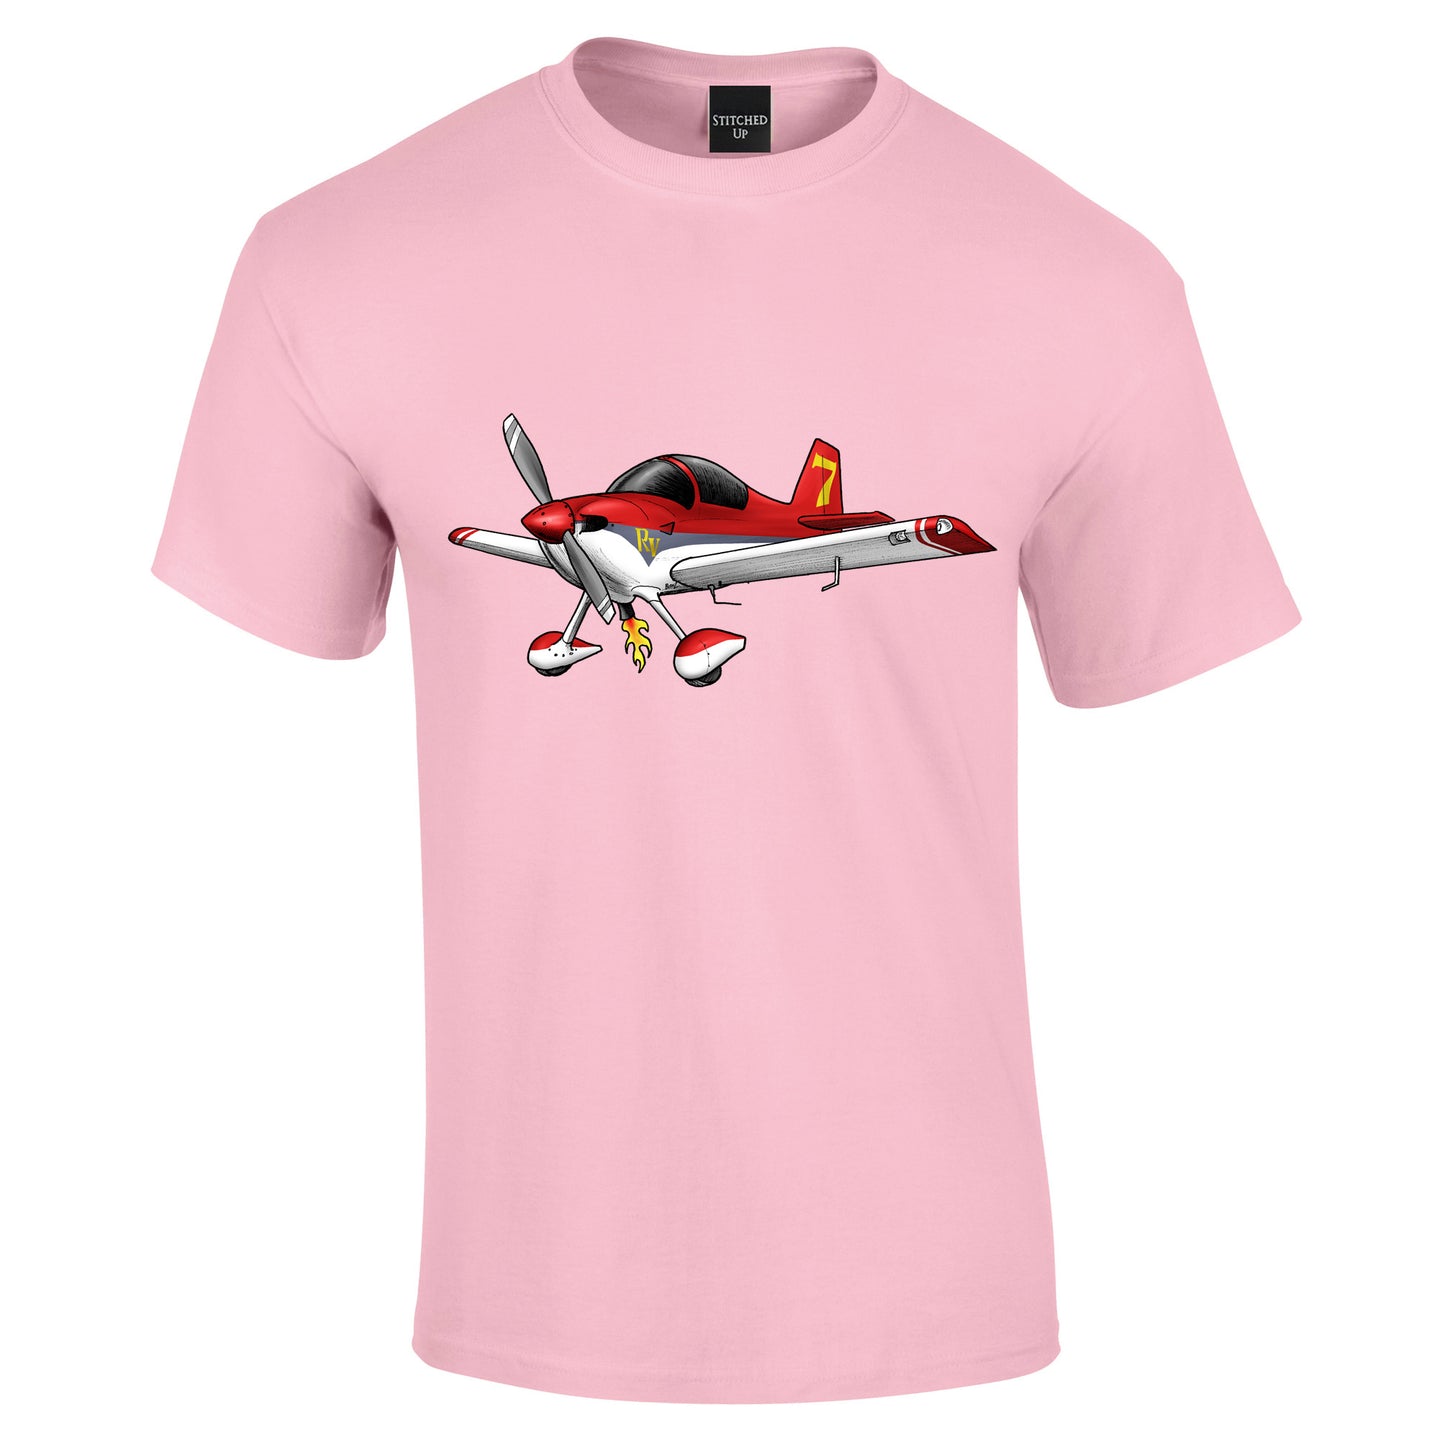 Vans RV7 Aircraft T-Shirt